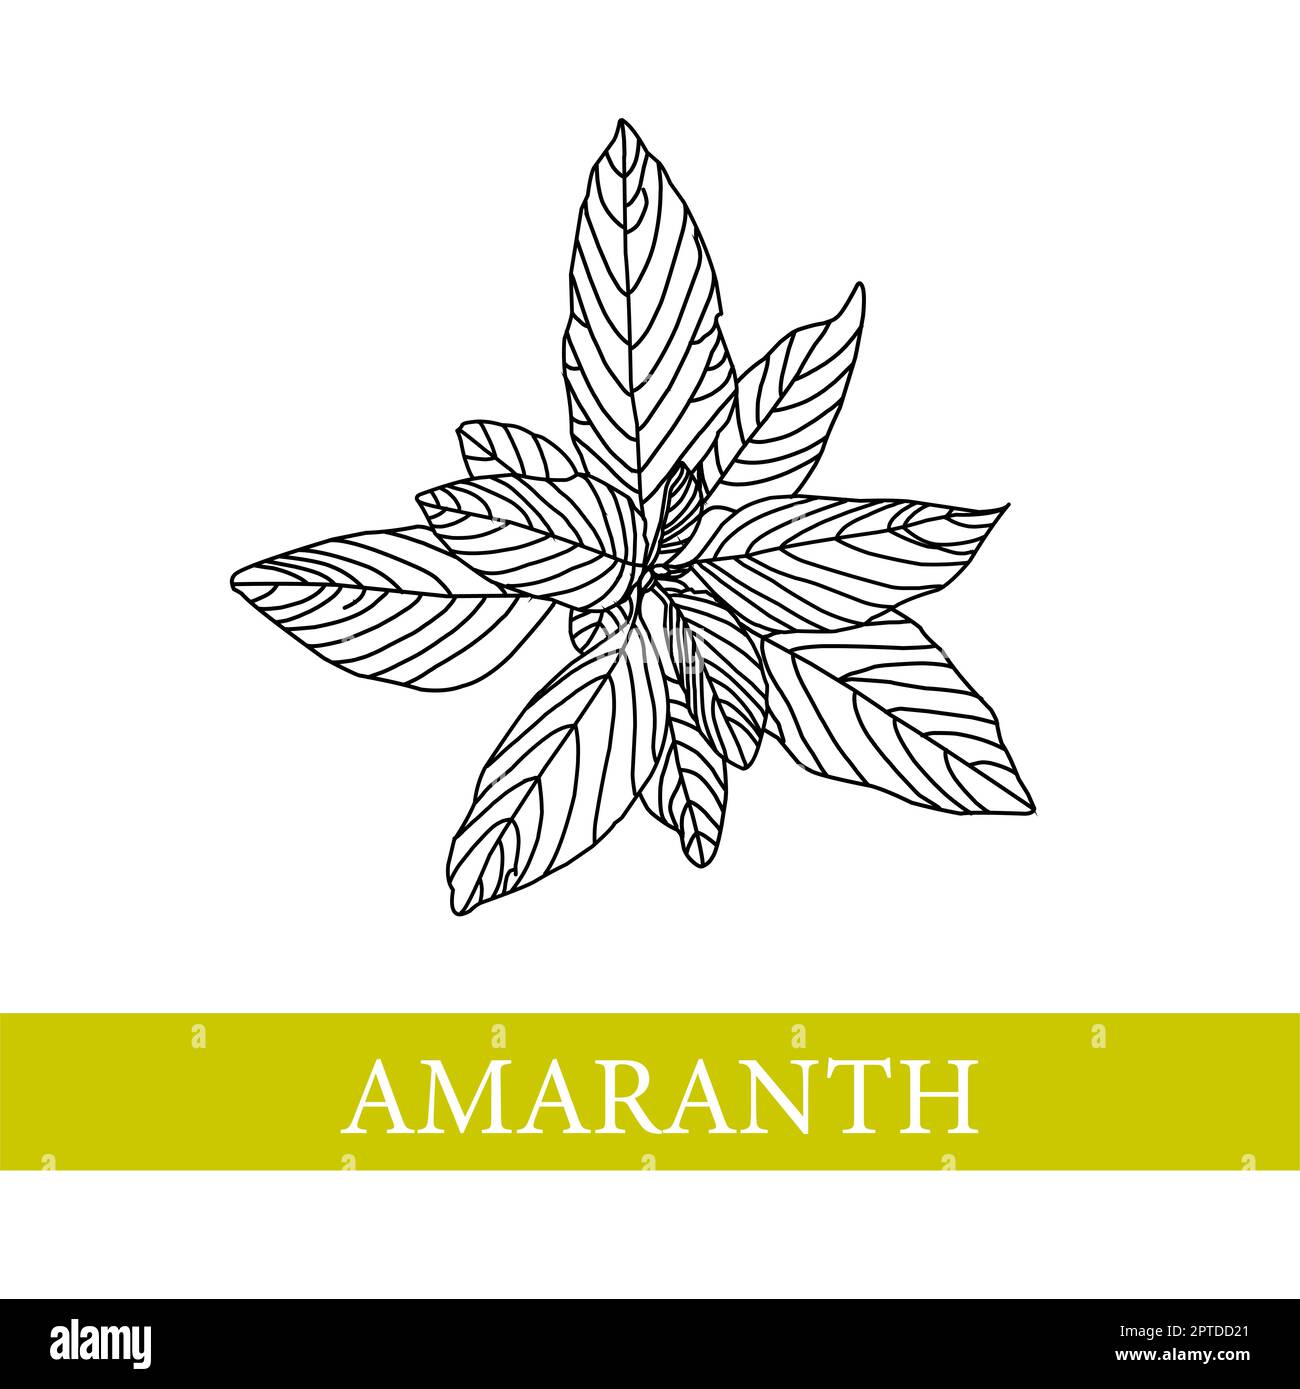 amaranth plant. Vector botanical illustration. AmaranthMedical plants Stock Photo